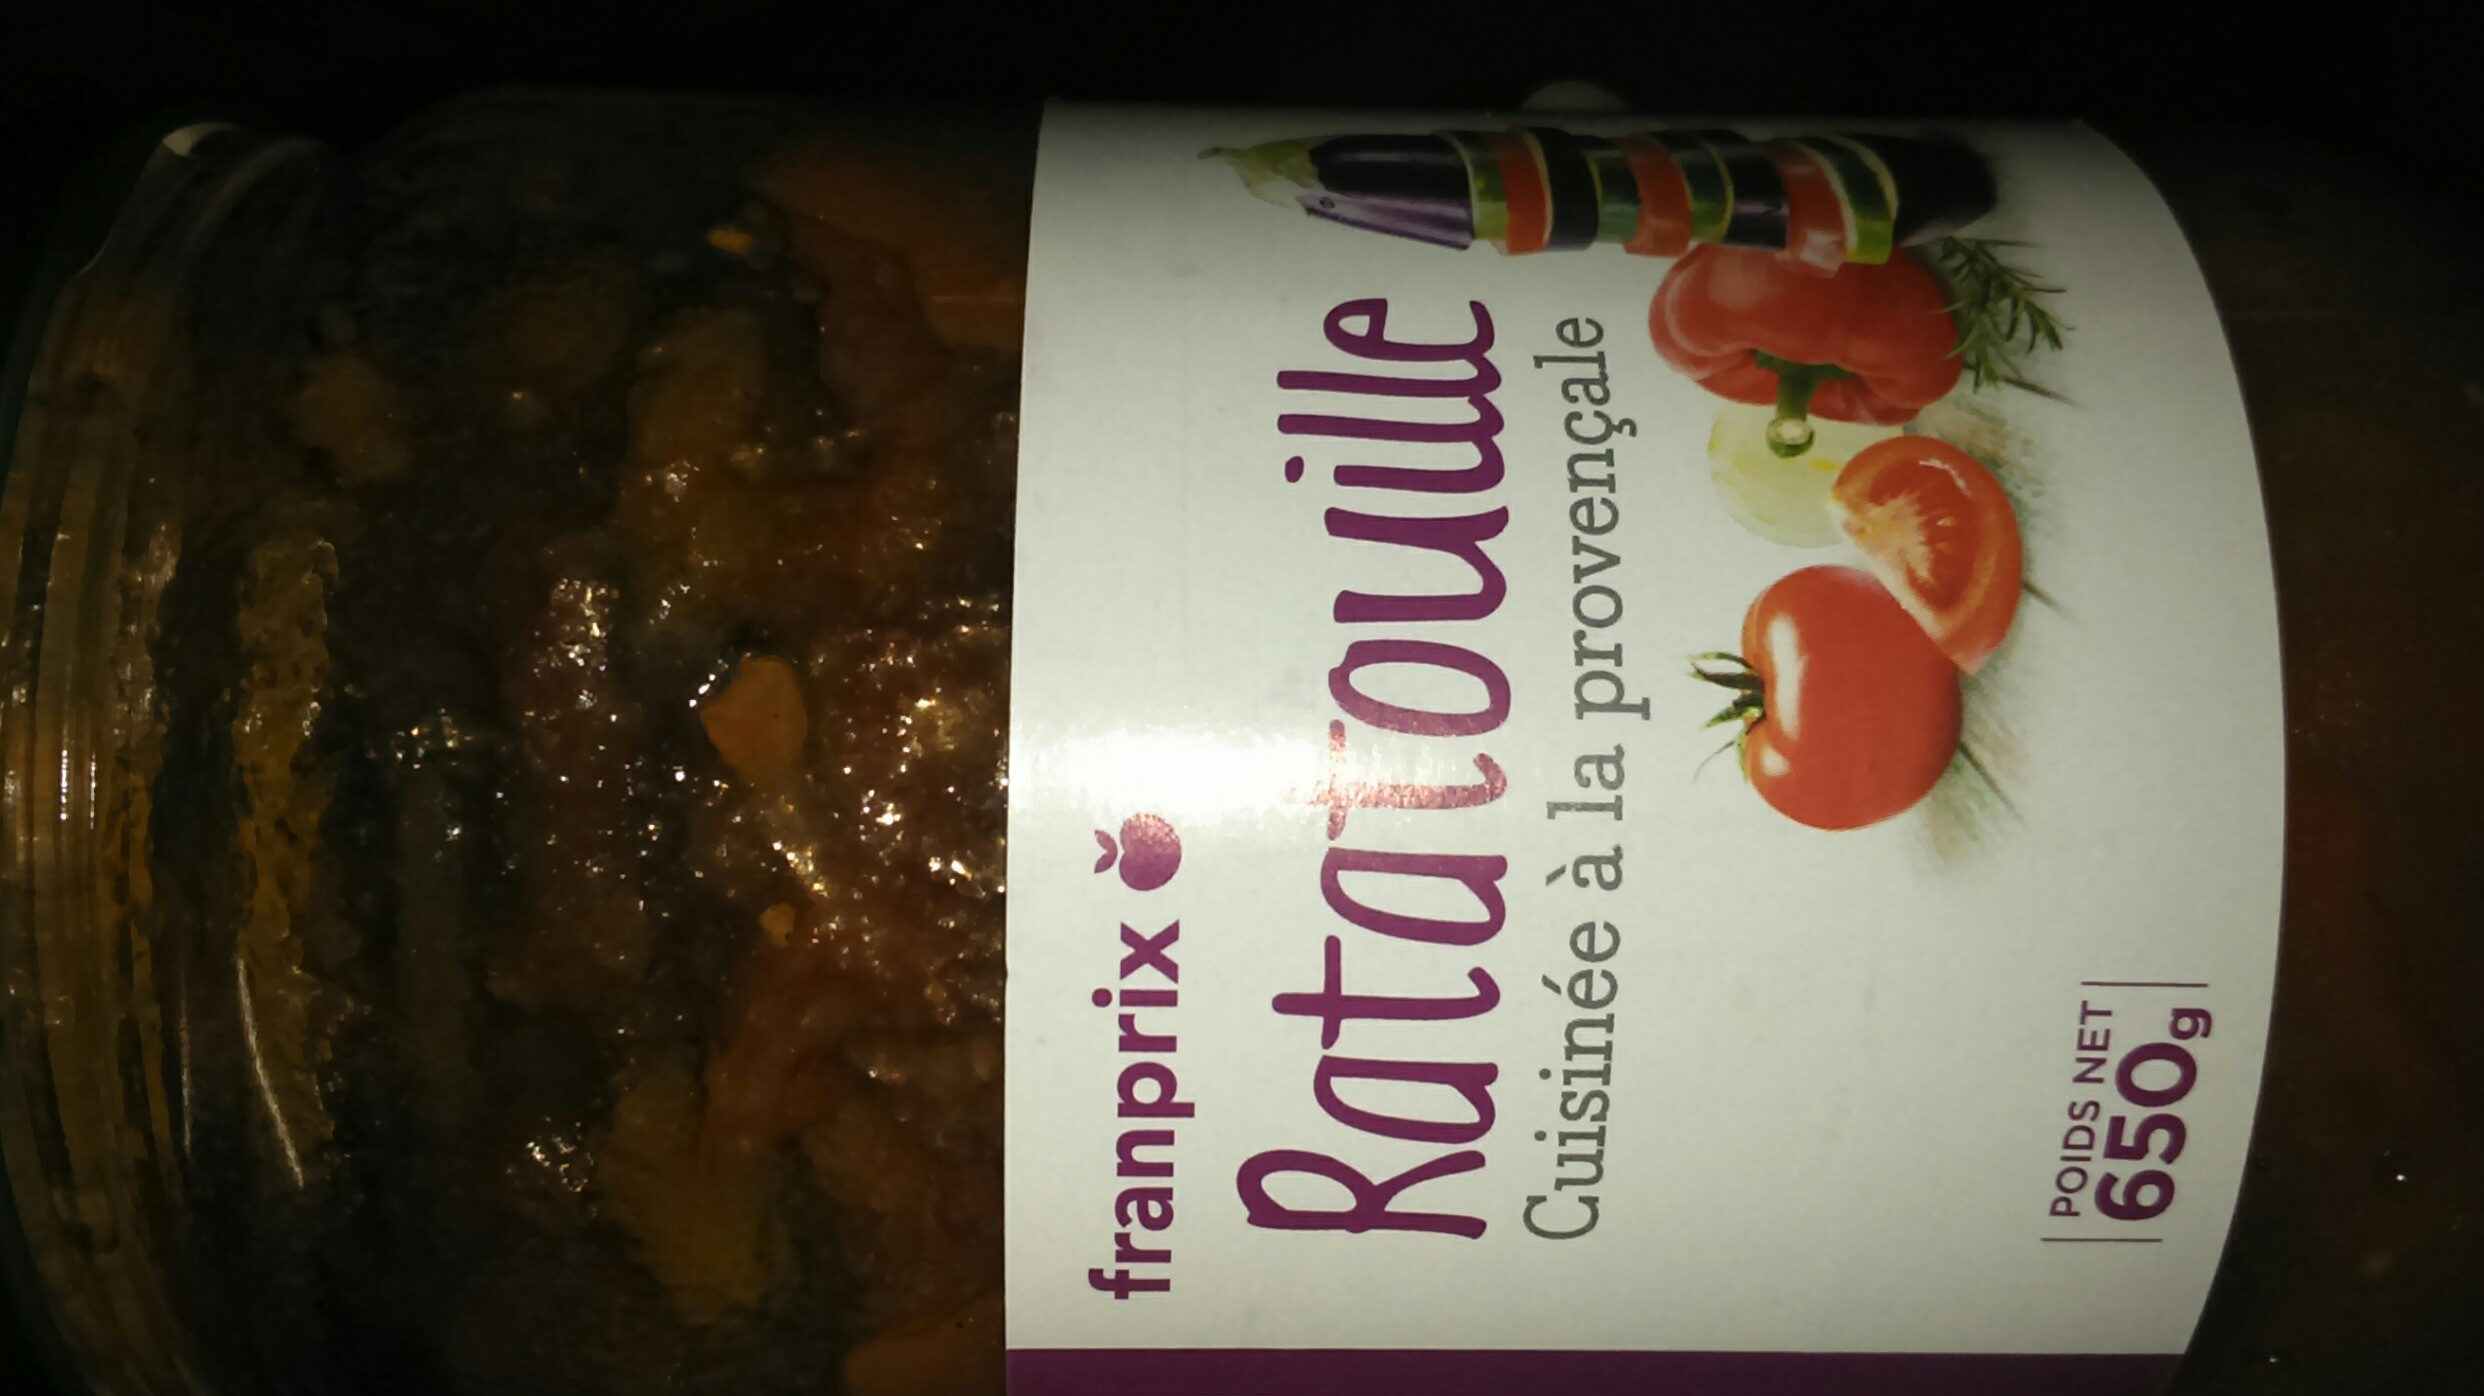 Ratatouille cuisinée à la provençale - Product - fr